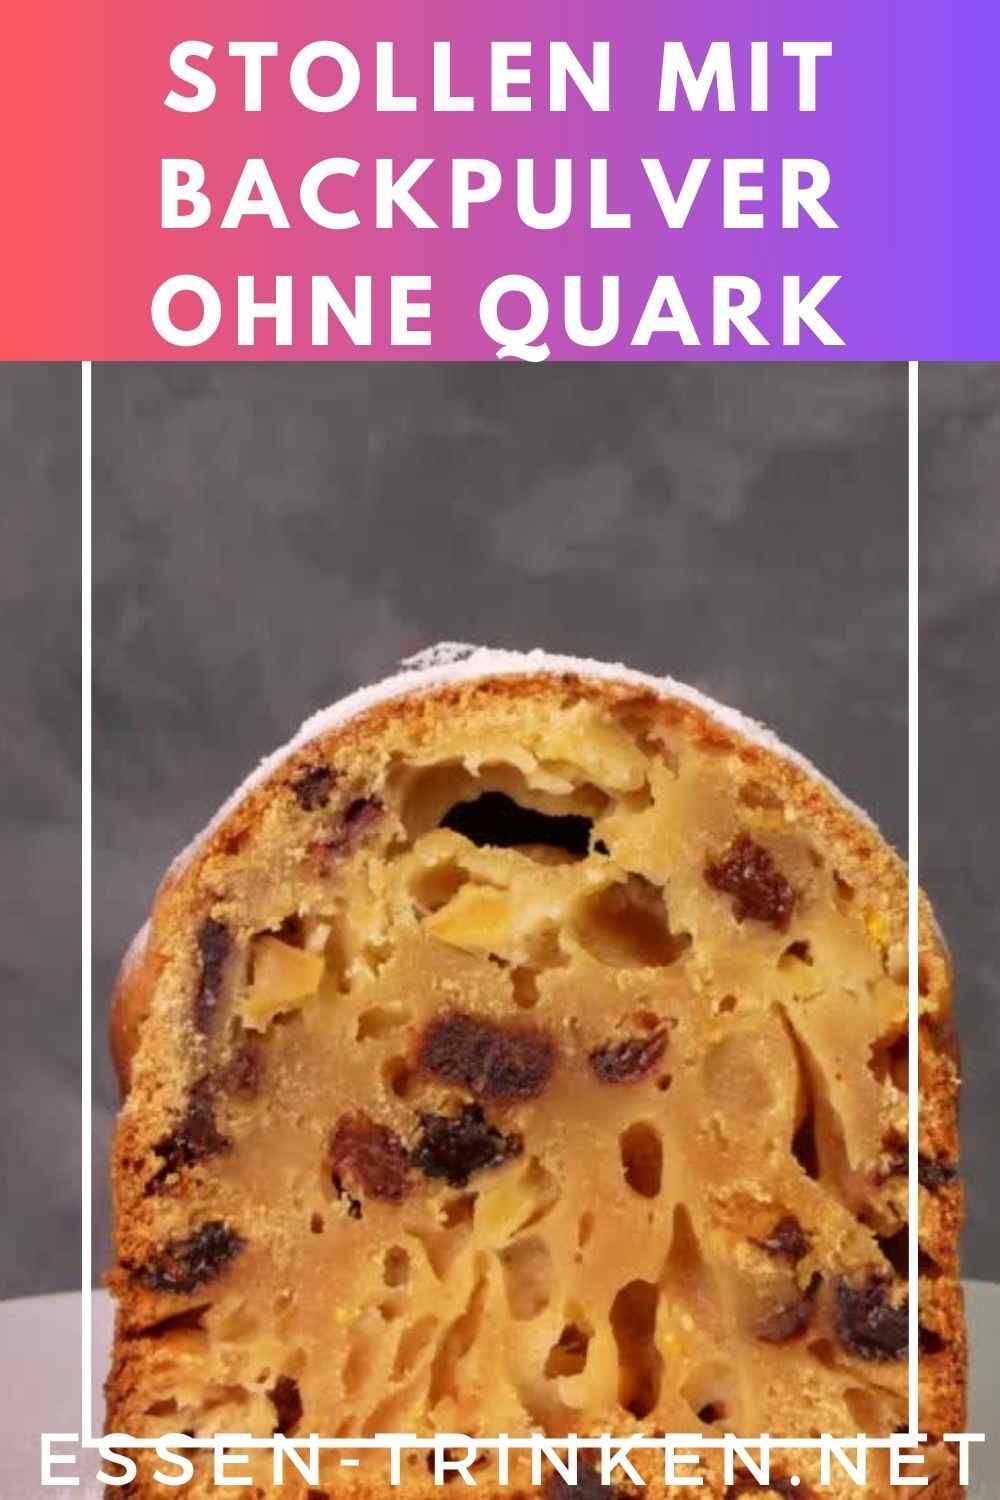 Stollen mit Backpulver ohne Quark